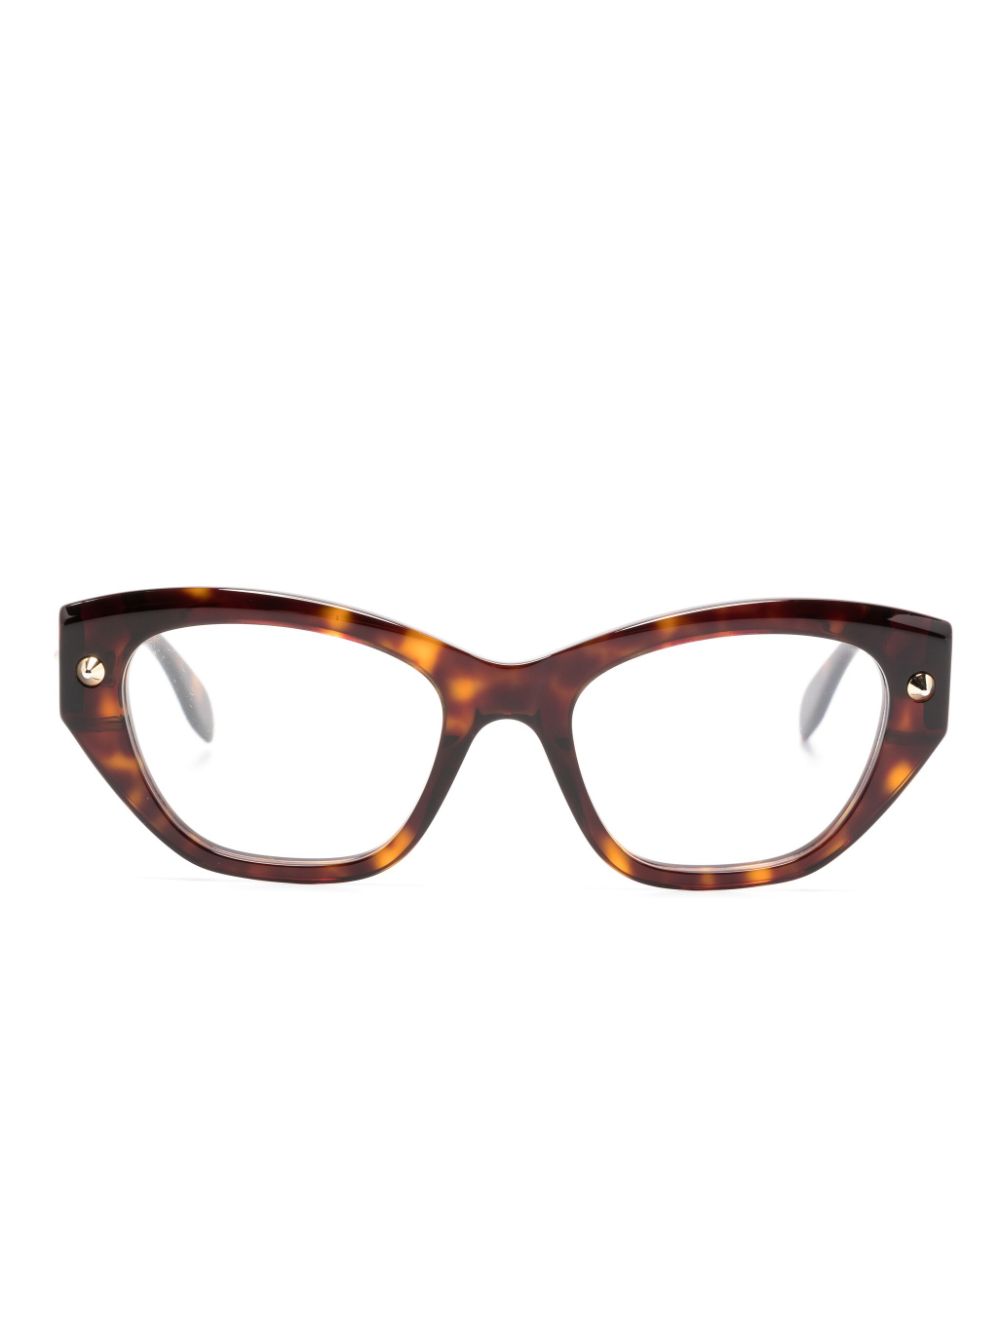 Alexander Mcqueen Tortoiseshell Cat-eye Frame Glasses In Brown